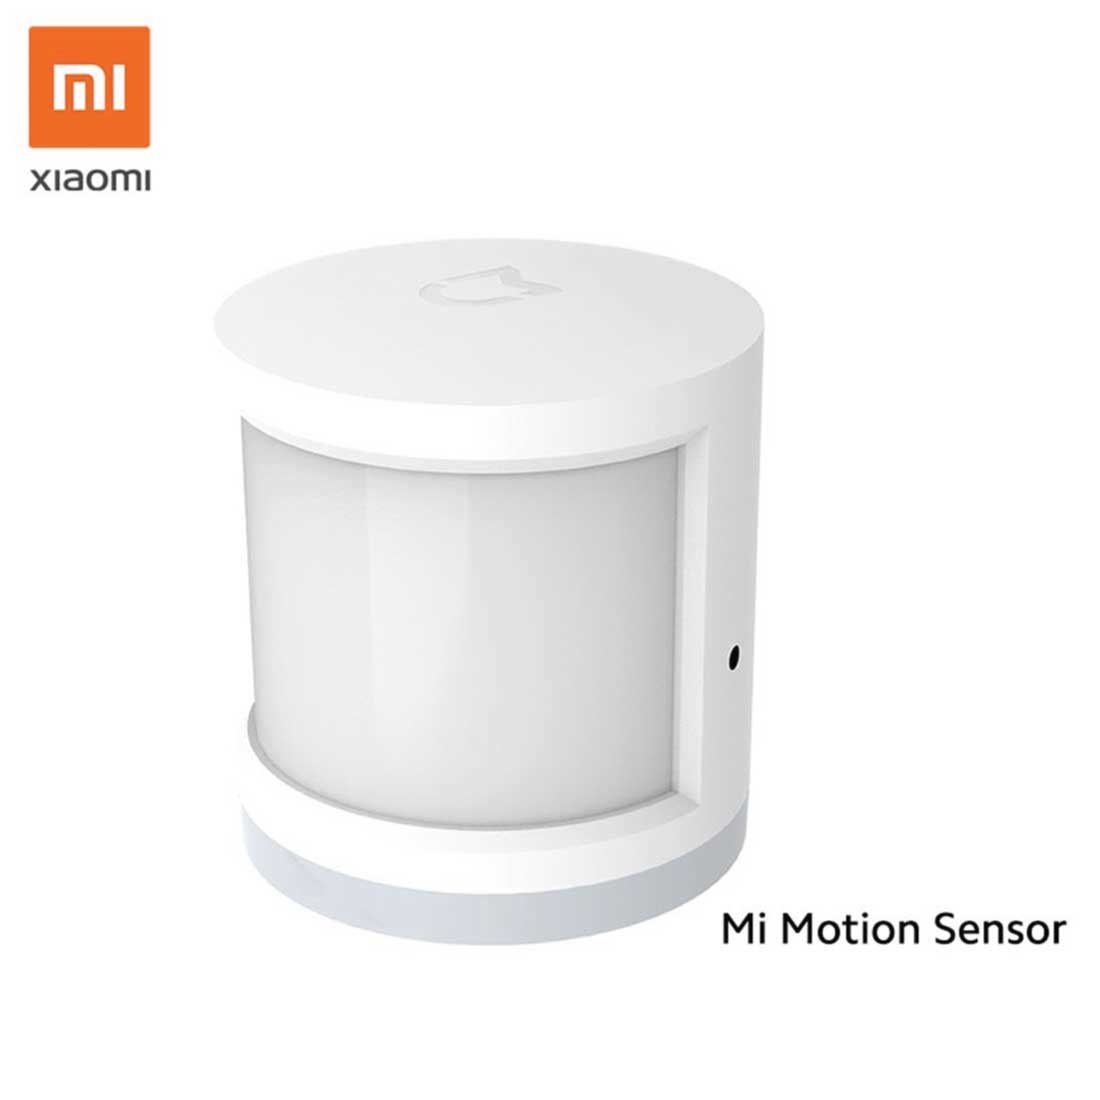 เซ็นเซอร์ตรวจจับความเคลื่อนไหว Xiaomi Motion Sensor (Global Version)/FLK สีขาว1